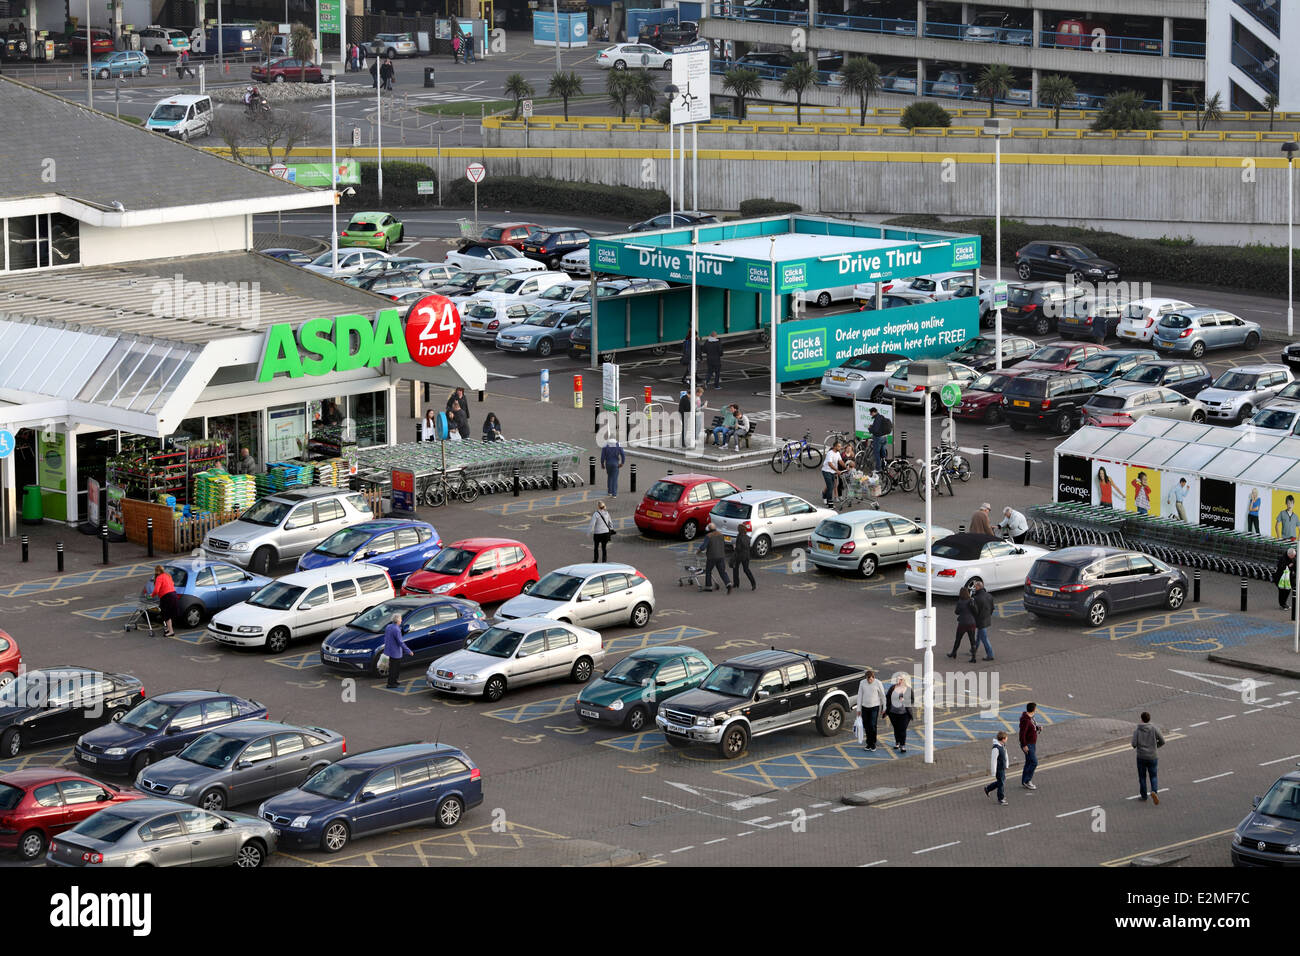 L'ingresso al supermercato Asda, Brighton Marina. Drive thru " Fare clic e raccogliere" area a destra. Foto Stock